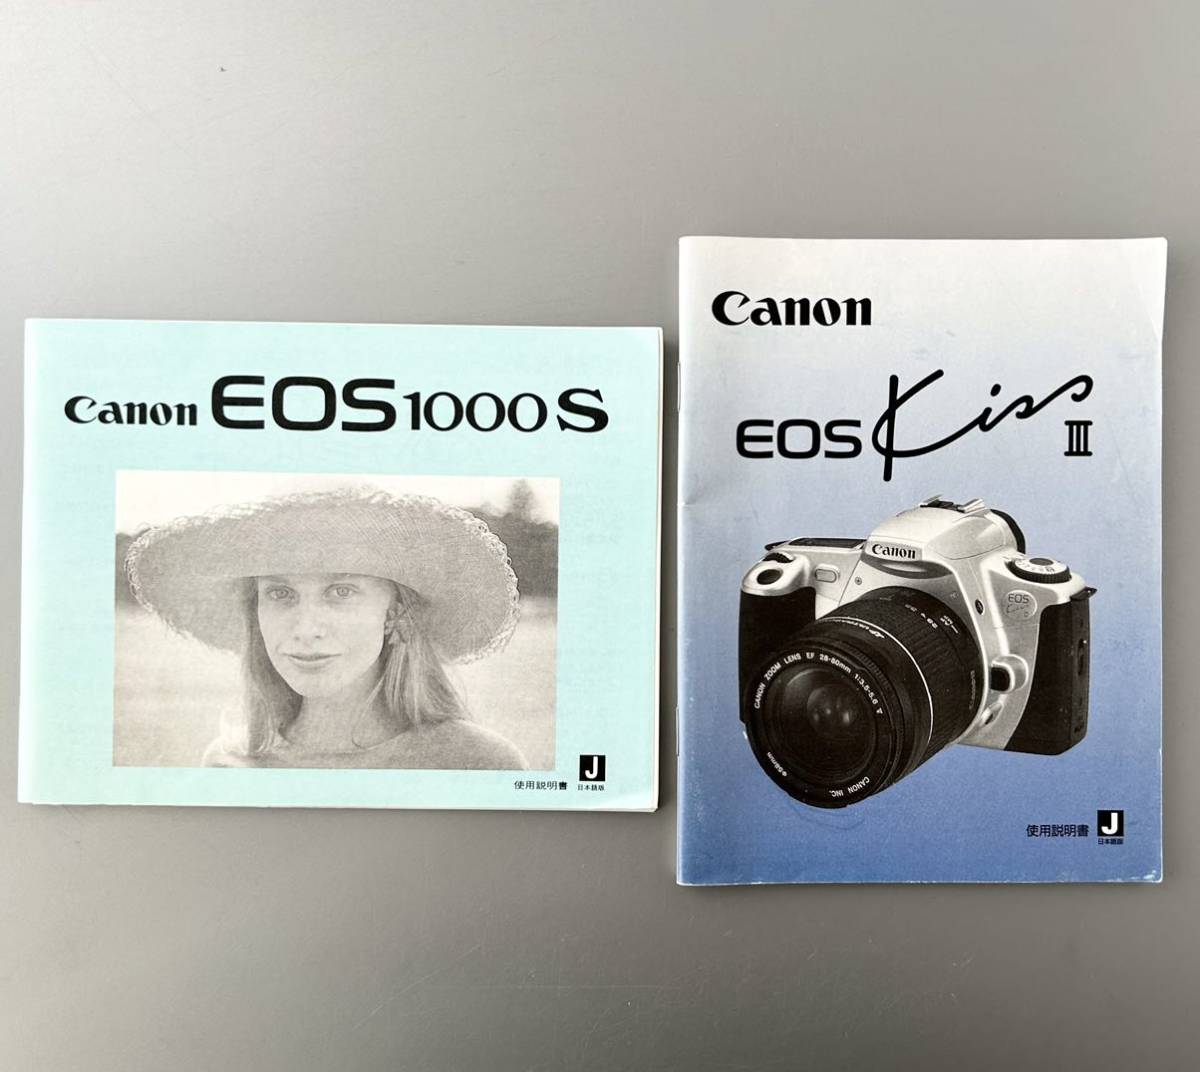 キヤノン EOS 使用説明書 4冊セット［Canon EOS Kiss ×2］&［Canon EOS Kiss III］&［Canon EOS 1000S］中古良品 　_画像3